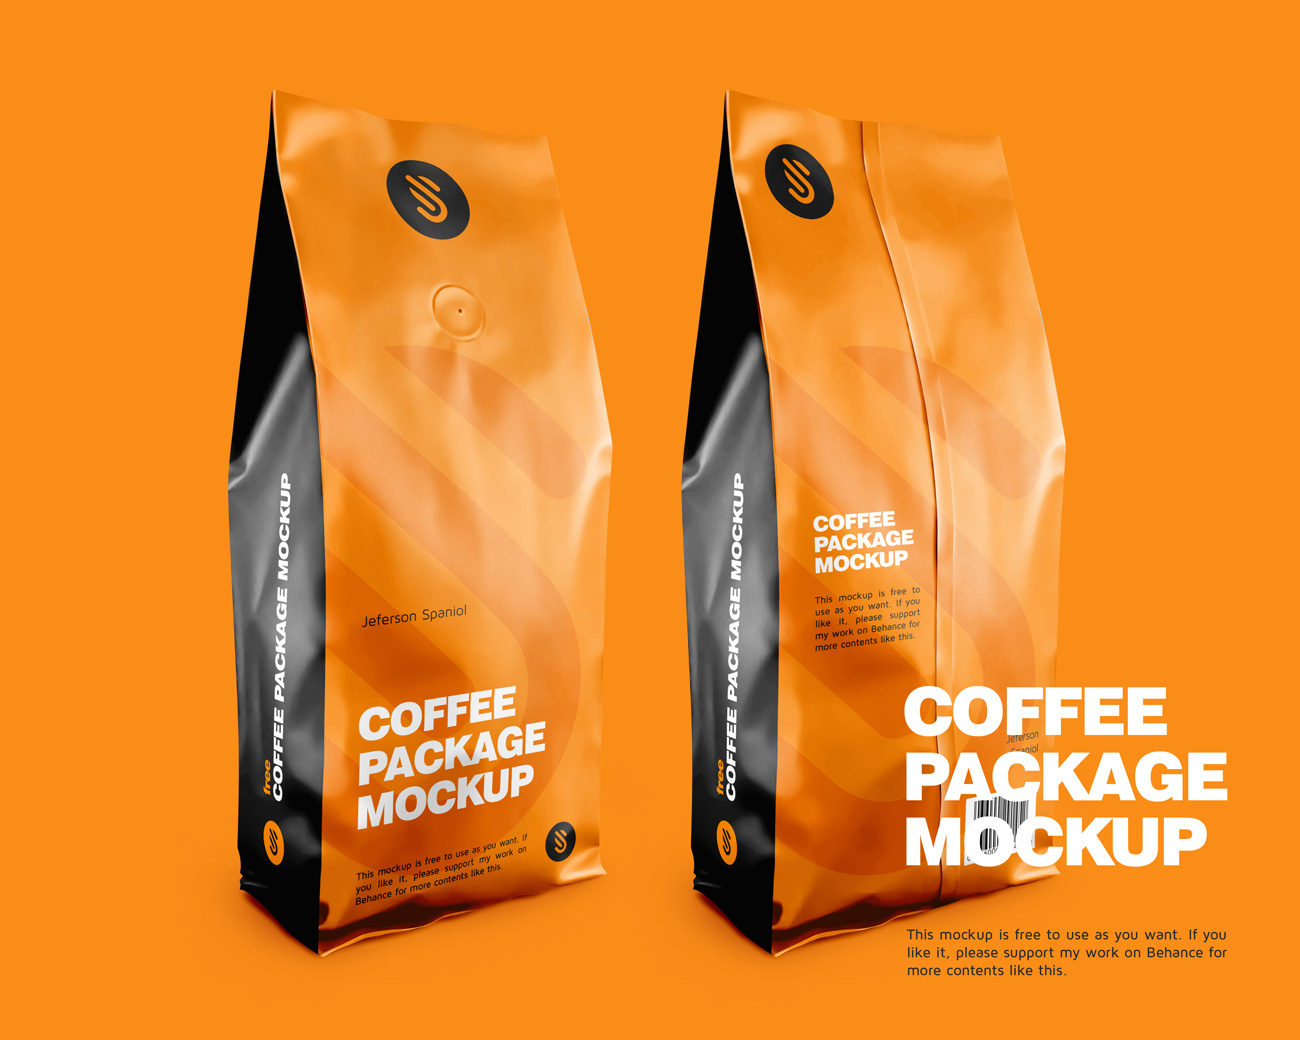 咖啡豆包装贴图样机模版素材 Coffee Package M